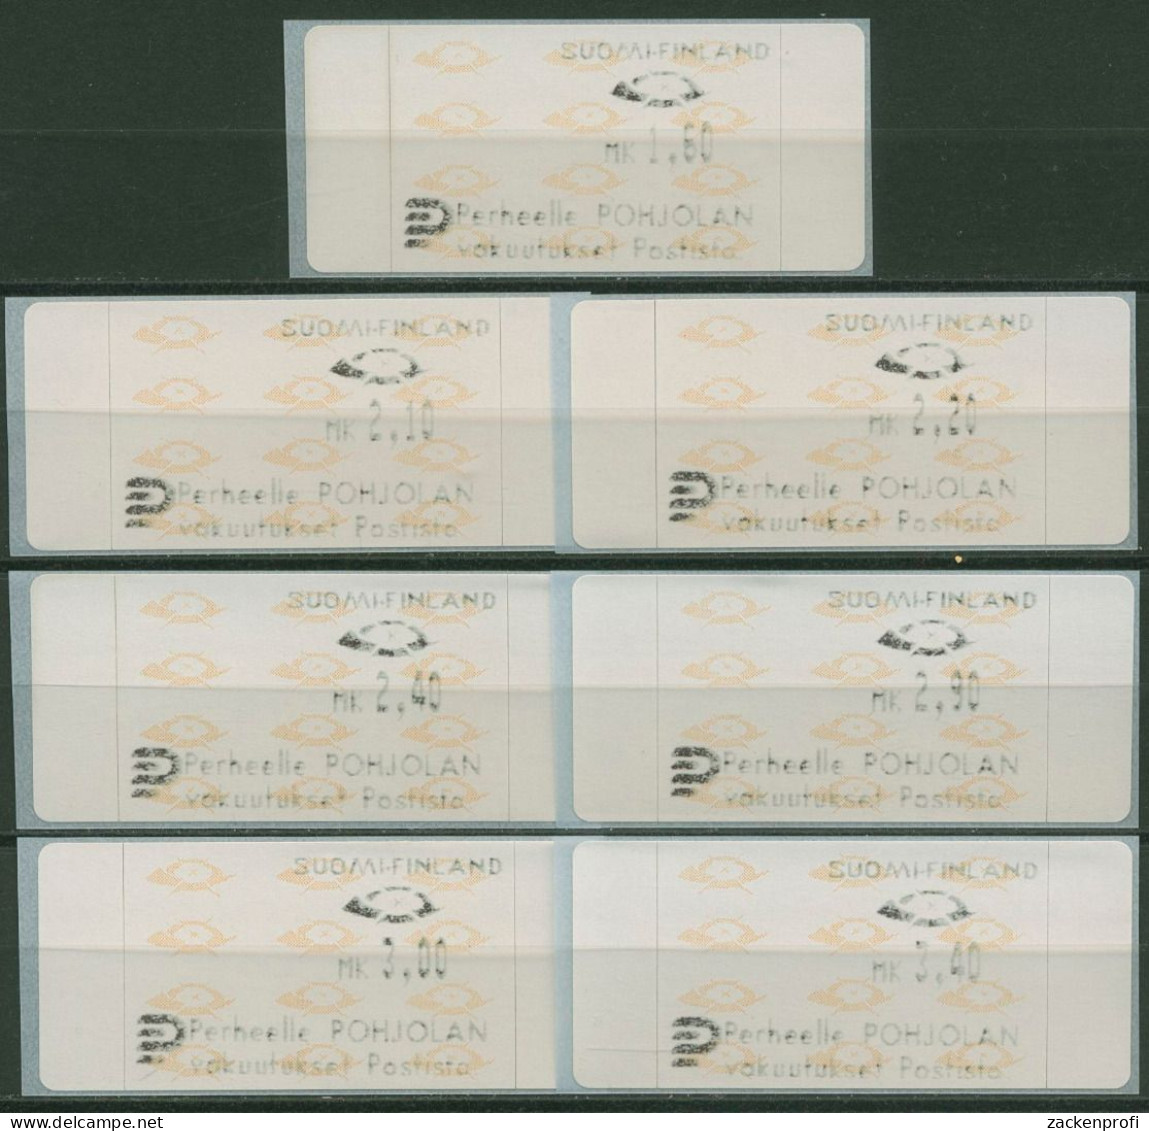 Finnland Automatenmarken 1992 Posthörner Satz 7 Werte ATM 12.3 S1 Postfrisch - Vignette [ATM]